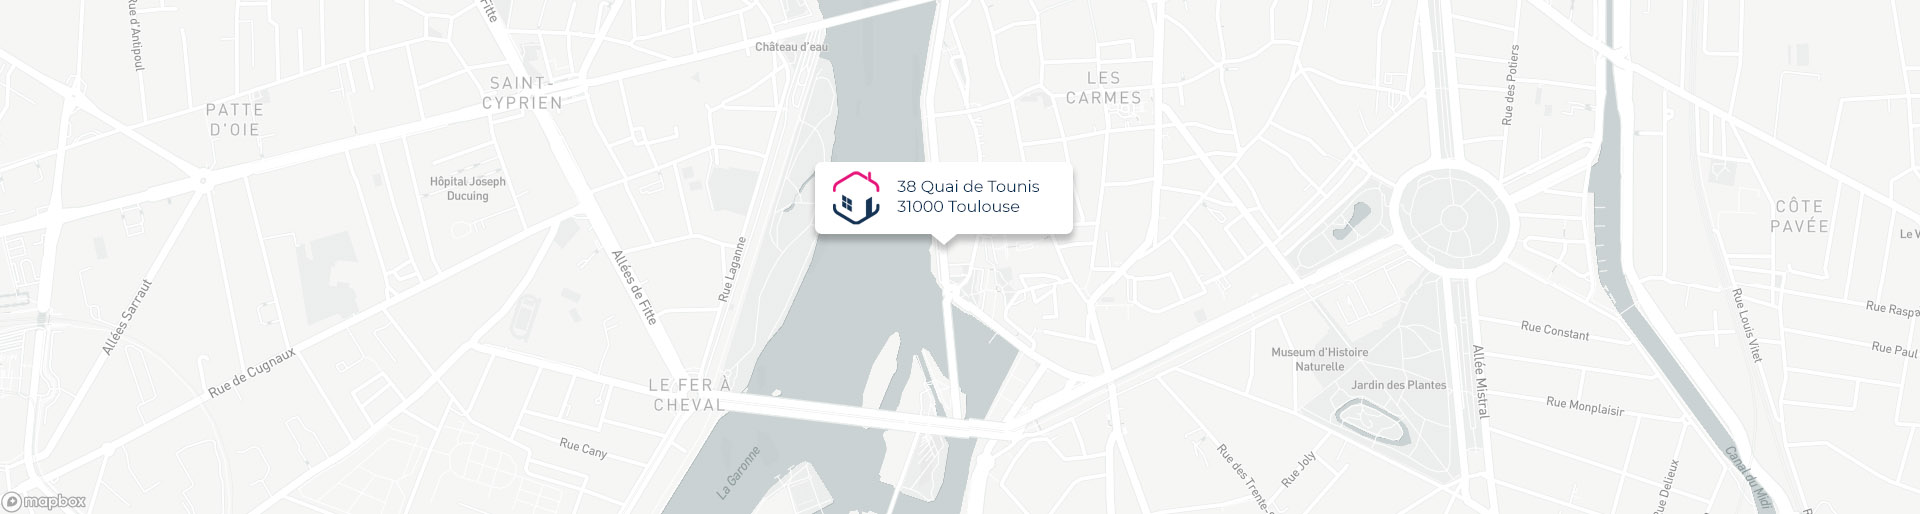 Plan de l'agence de Toulouse IMMO9 située 38, Quai de Tounis 31000 Toulouse tel: tel:0561217949